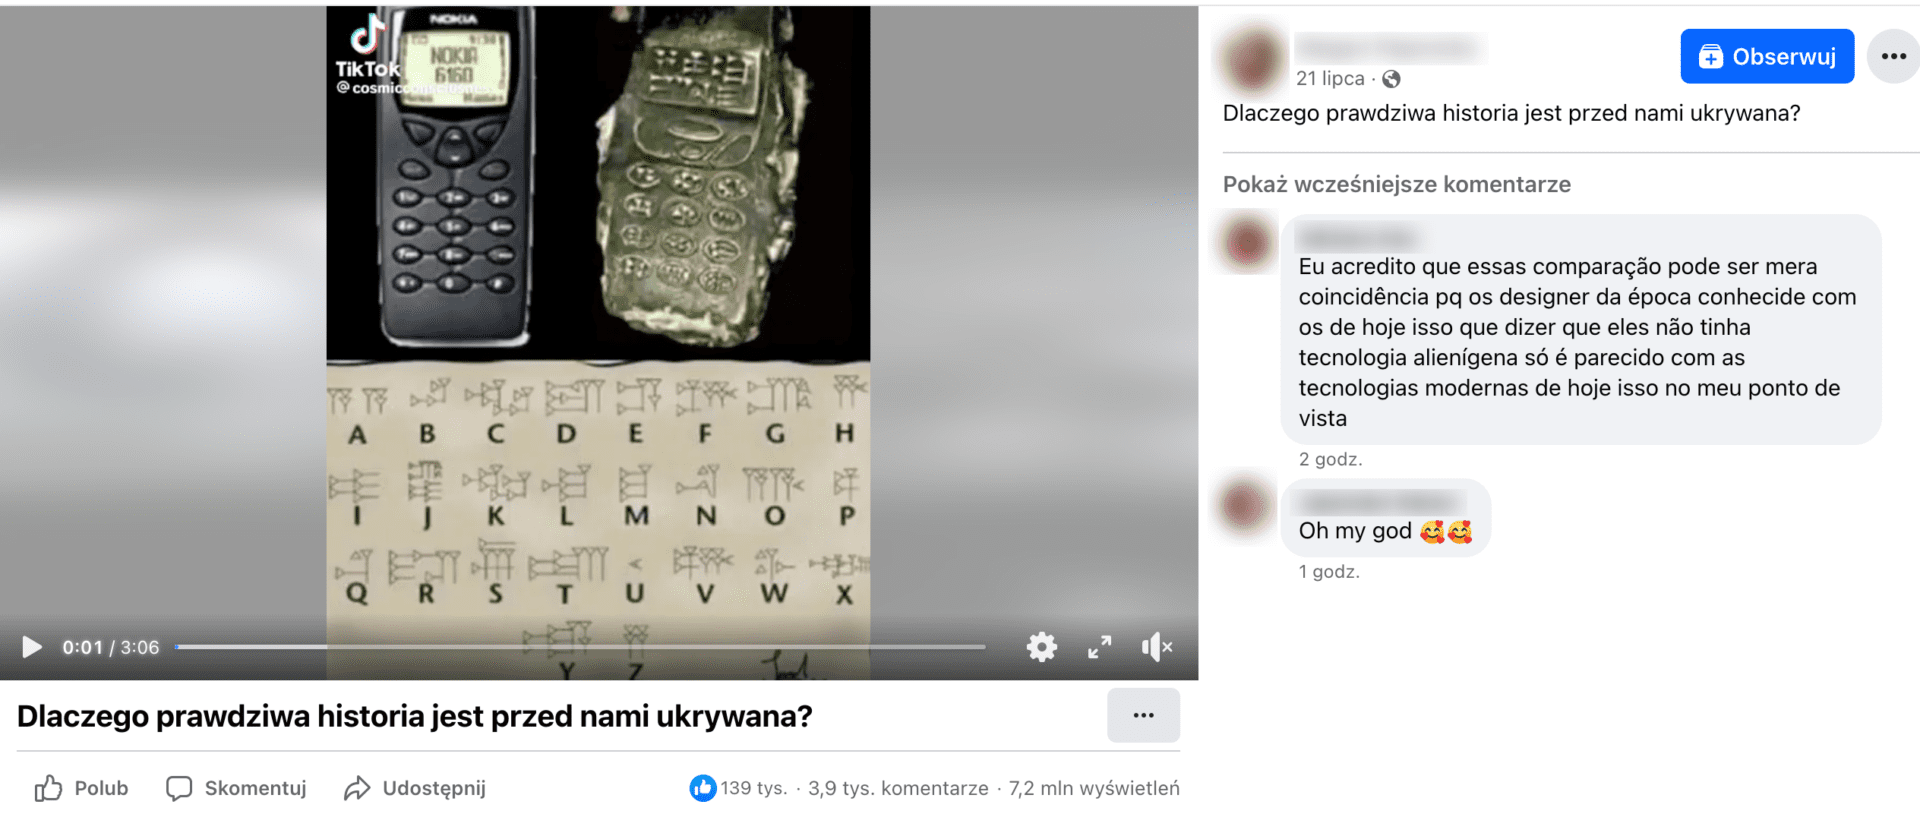 Zrzut ekranu posta na Facebooku. W kadrze tiktoka znajduje się aparat komórkowy NOKIA 6160 oraz drugi, podobny aparat, z pismem podobnym do pisma klinowego na klawiszach i na ekranie. Poniżej znaki tego samego alfabetu podpisano ich rzekomymi, łacińskimi odpowiednikami. 